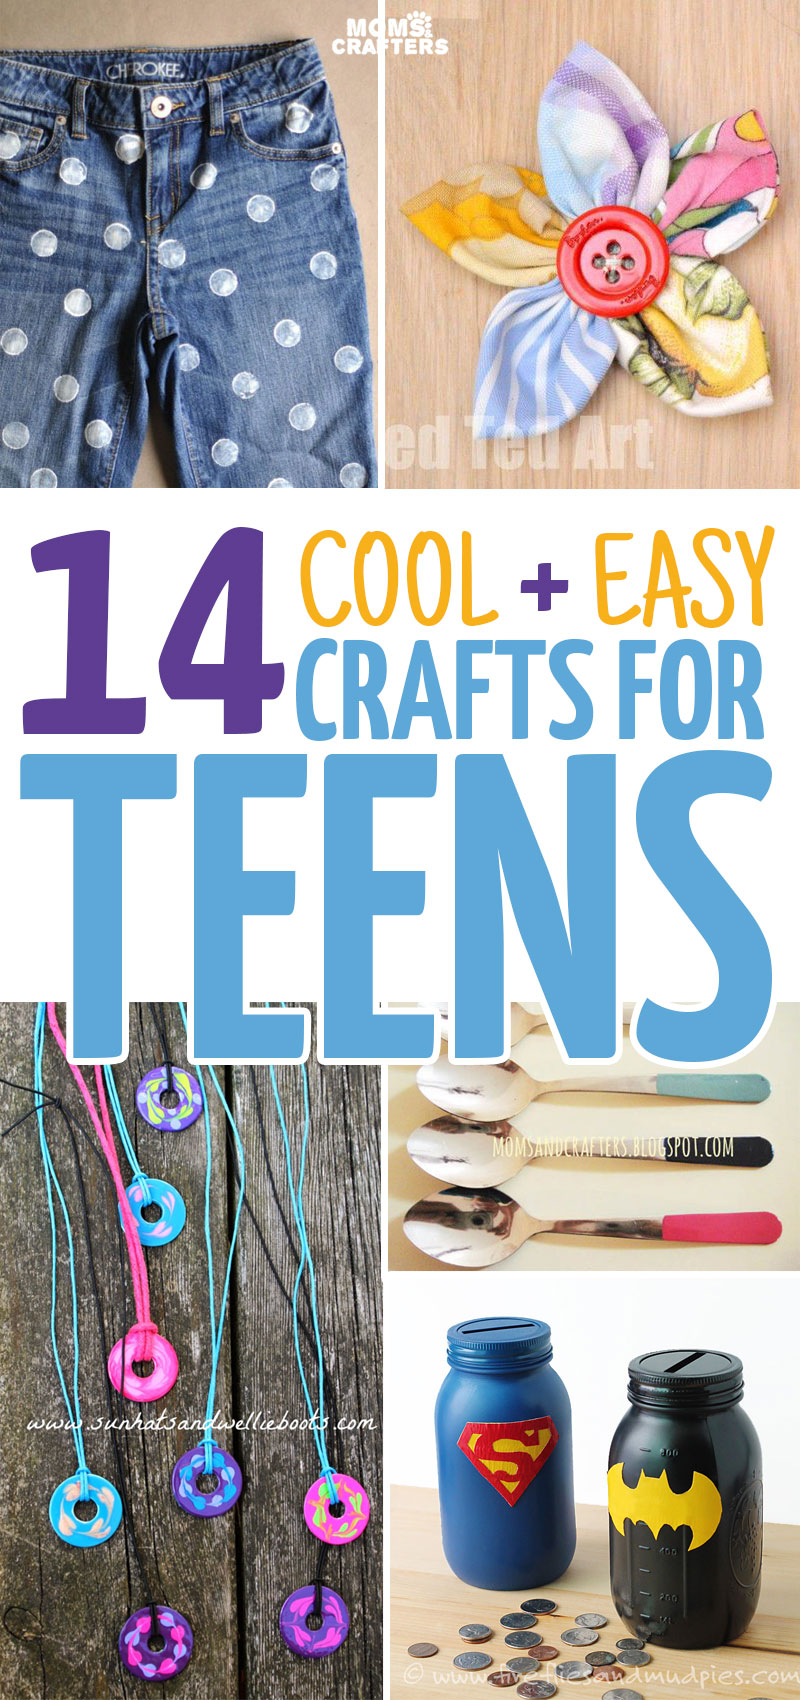 https://www.momsandcrafters.com/wp-content/uploads/2014/10/crafts-for-teens-v.jpg